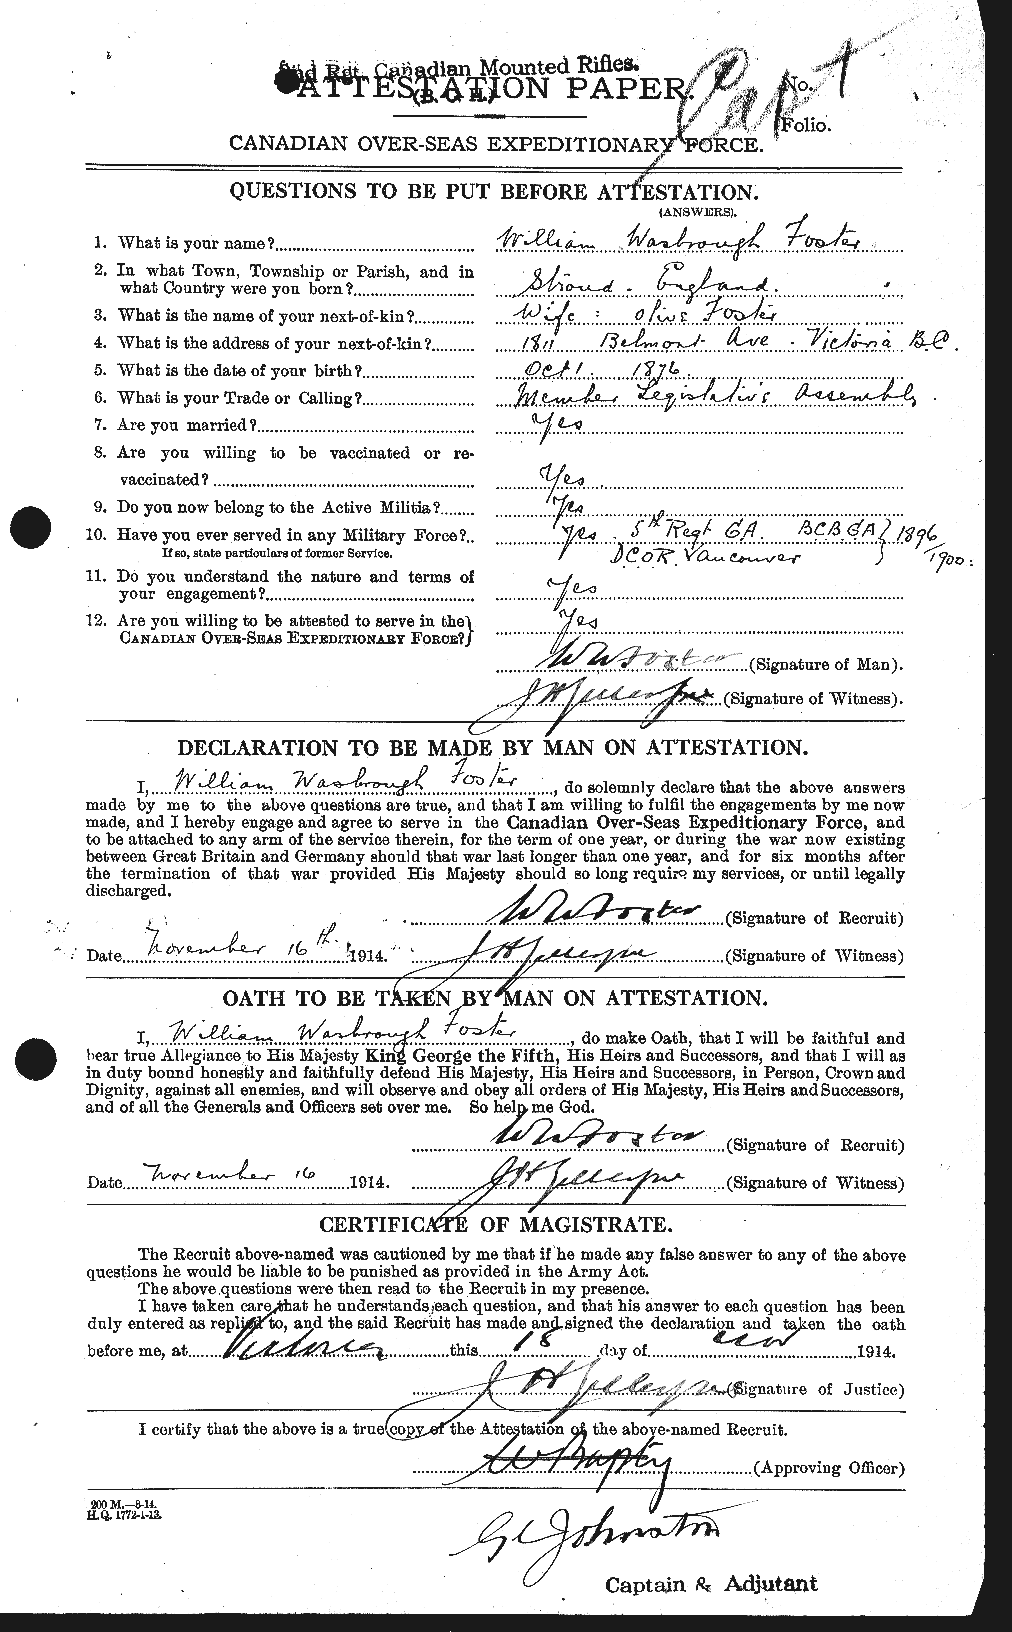 Dossiers du Personnel de la Première Guerre mondiale - CEC 328776a